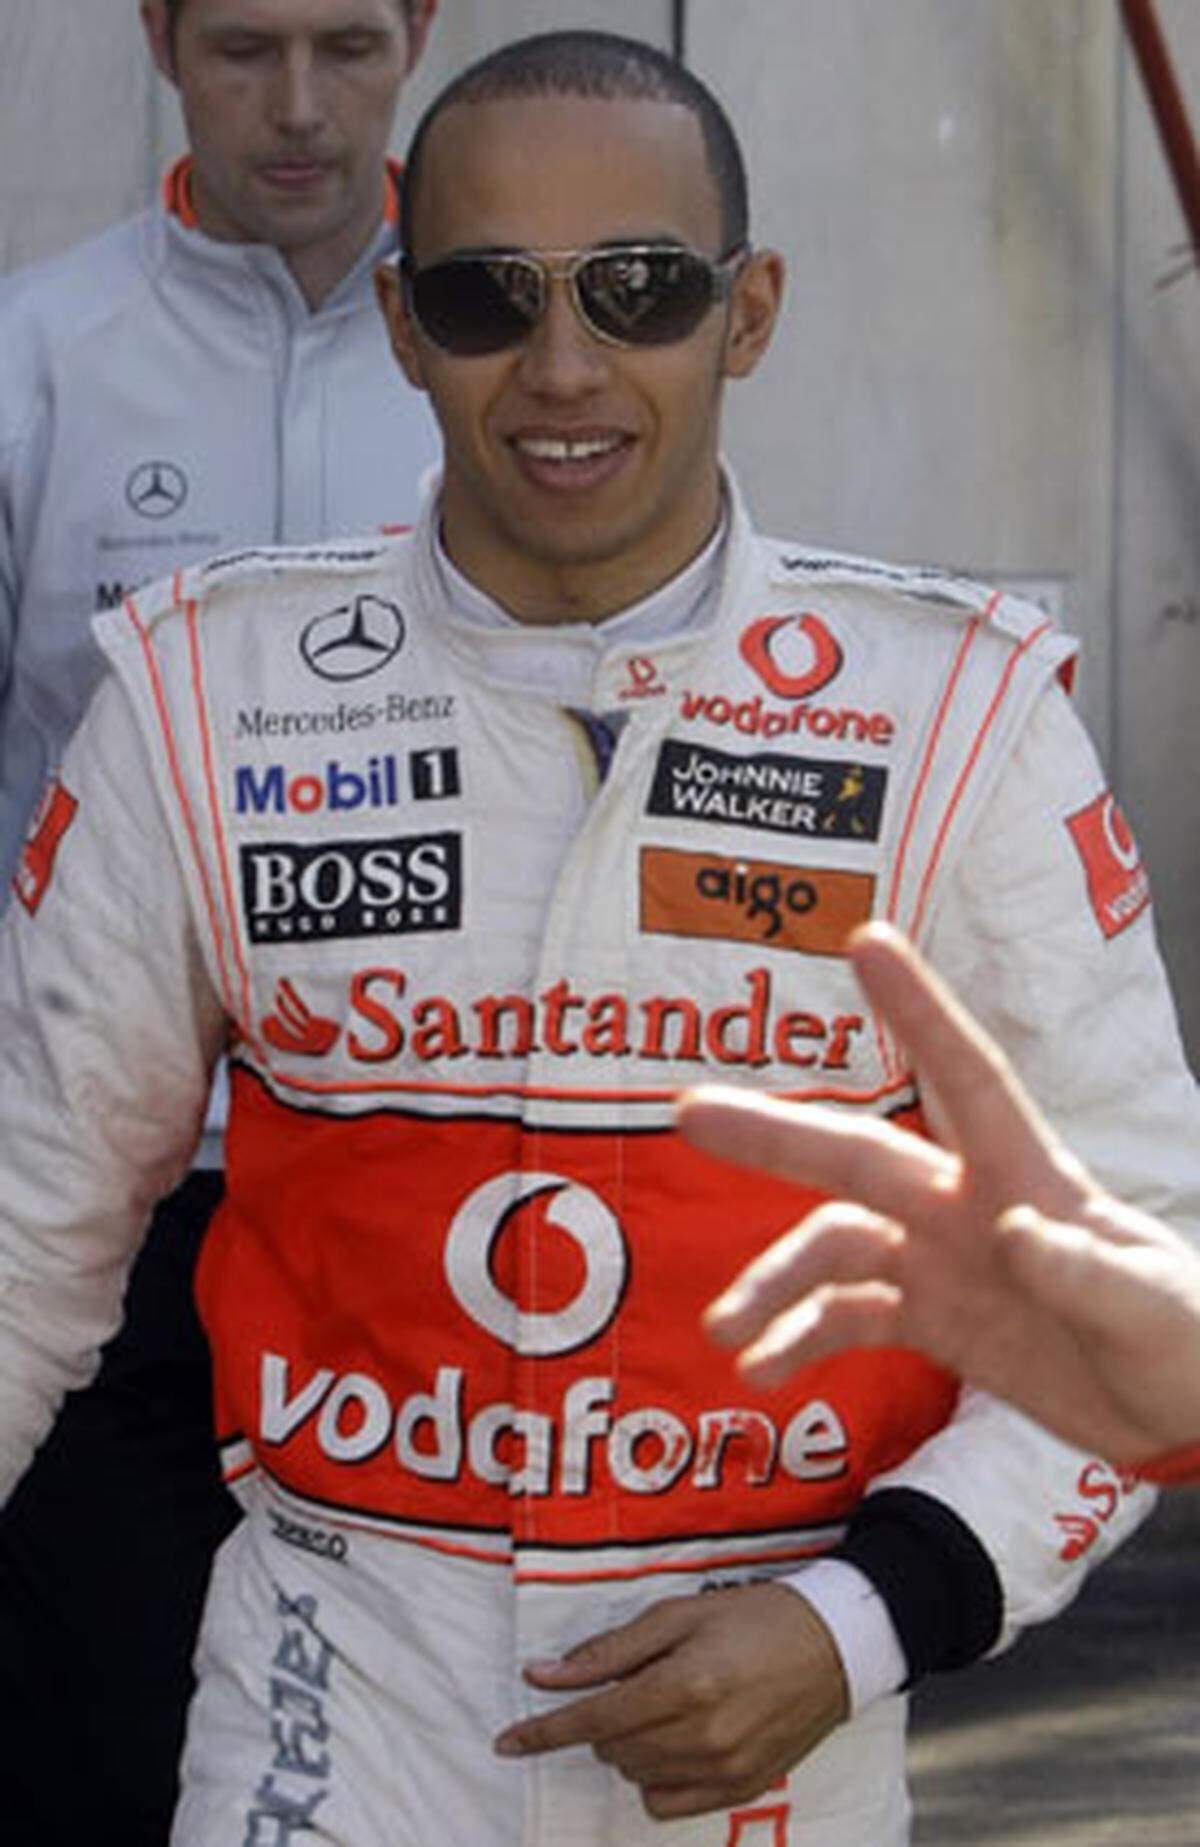 McLaren wird 2010 ein spektakuläres Fahrer-Duo aufbieten können: Jenson Button, der Weltmeister 2009, hat nämlich Lewis Hamilton, den Weltmeister 2008, zum Partner. Hamilton steht bei McLaren noch bis 2012 unter Vertrag.